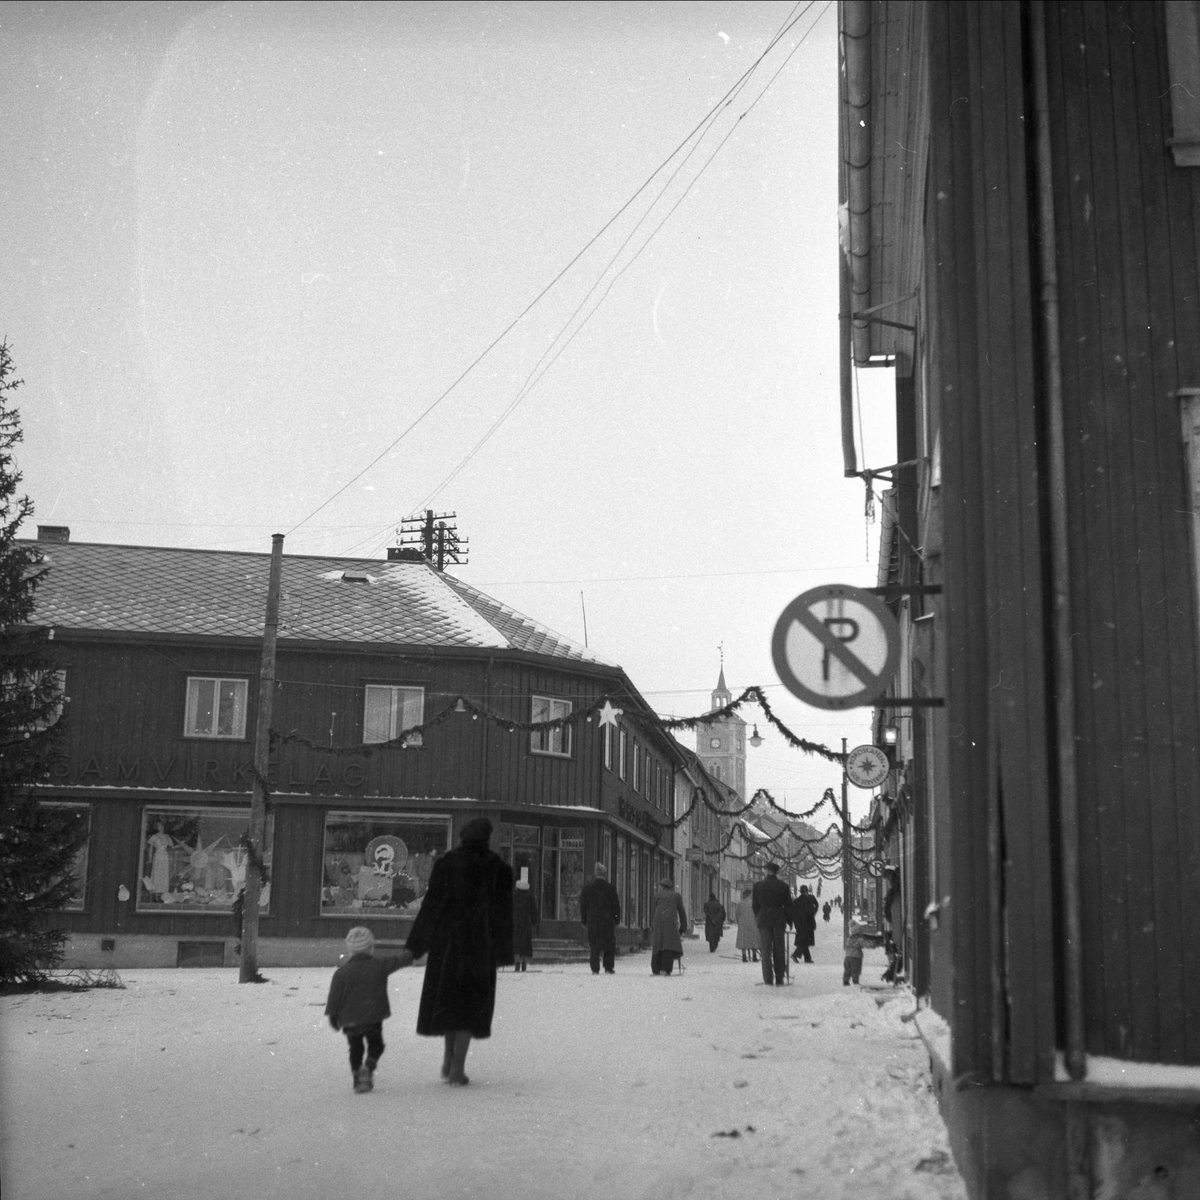 Røros, Sør-Trøndelag, 18.12.1954. Bybilde med julegater.